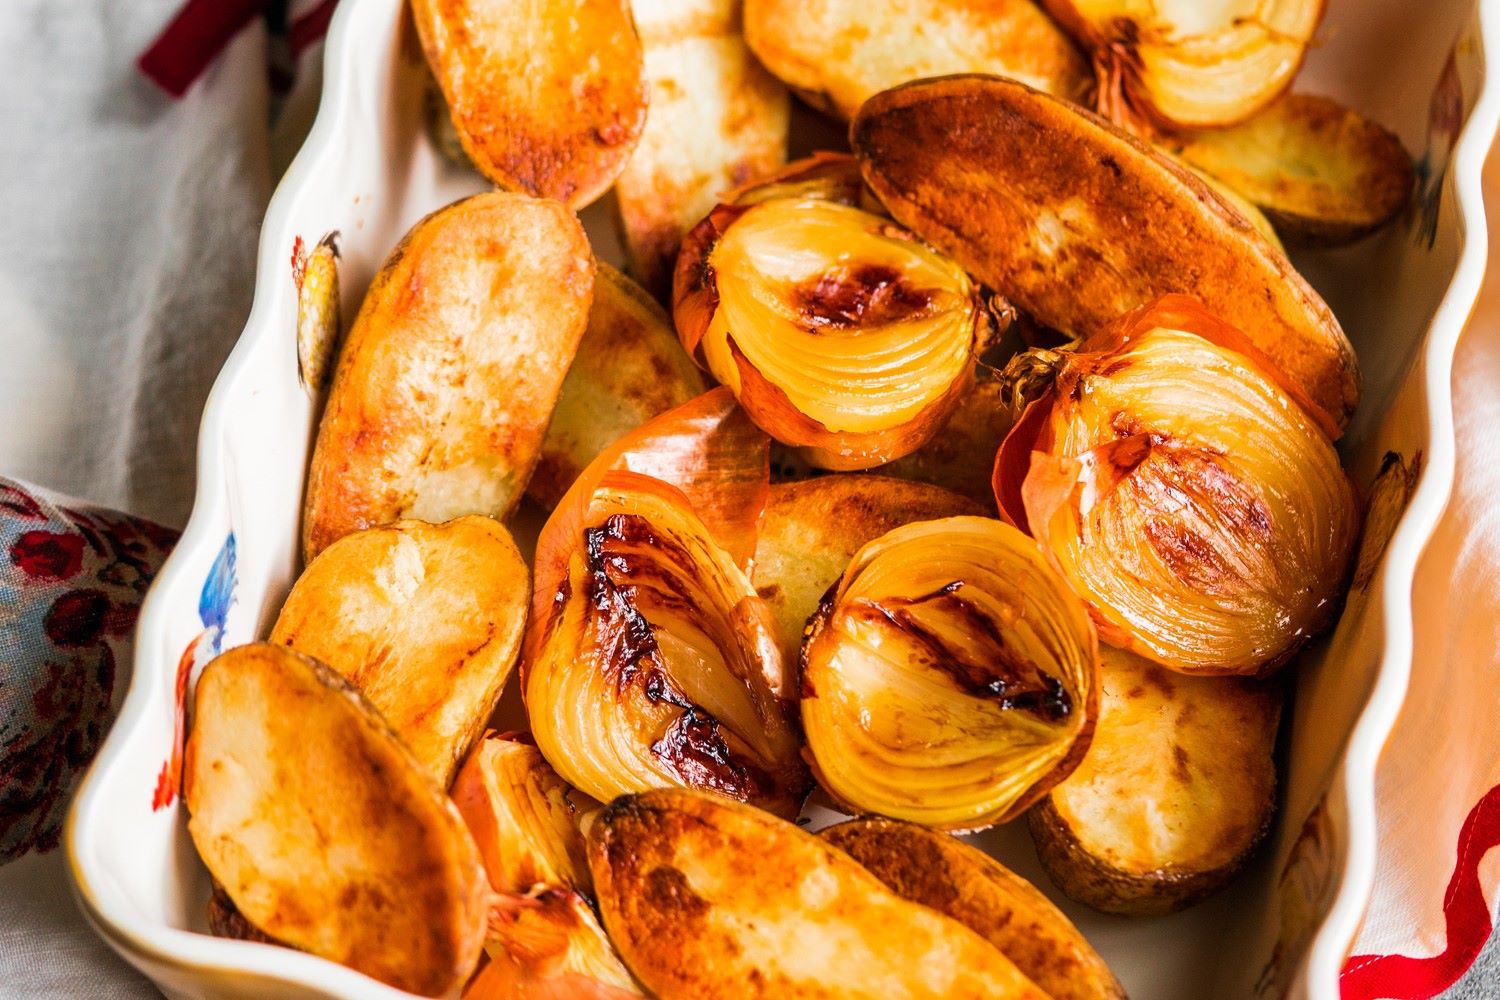 potato recipes to try, potatoes and onions